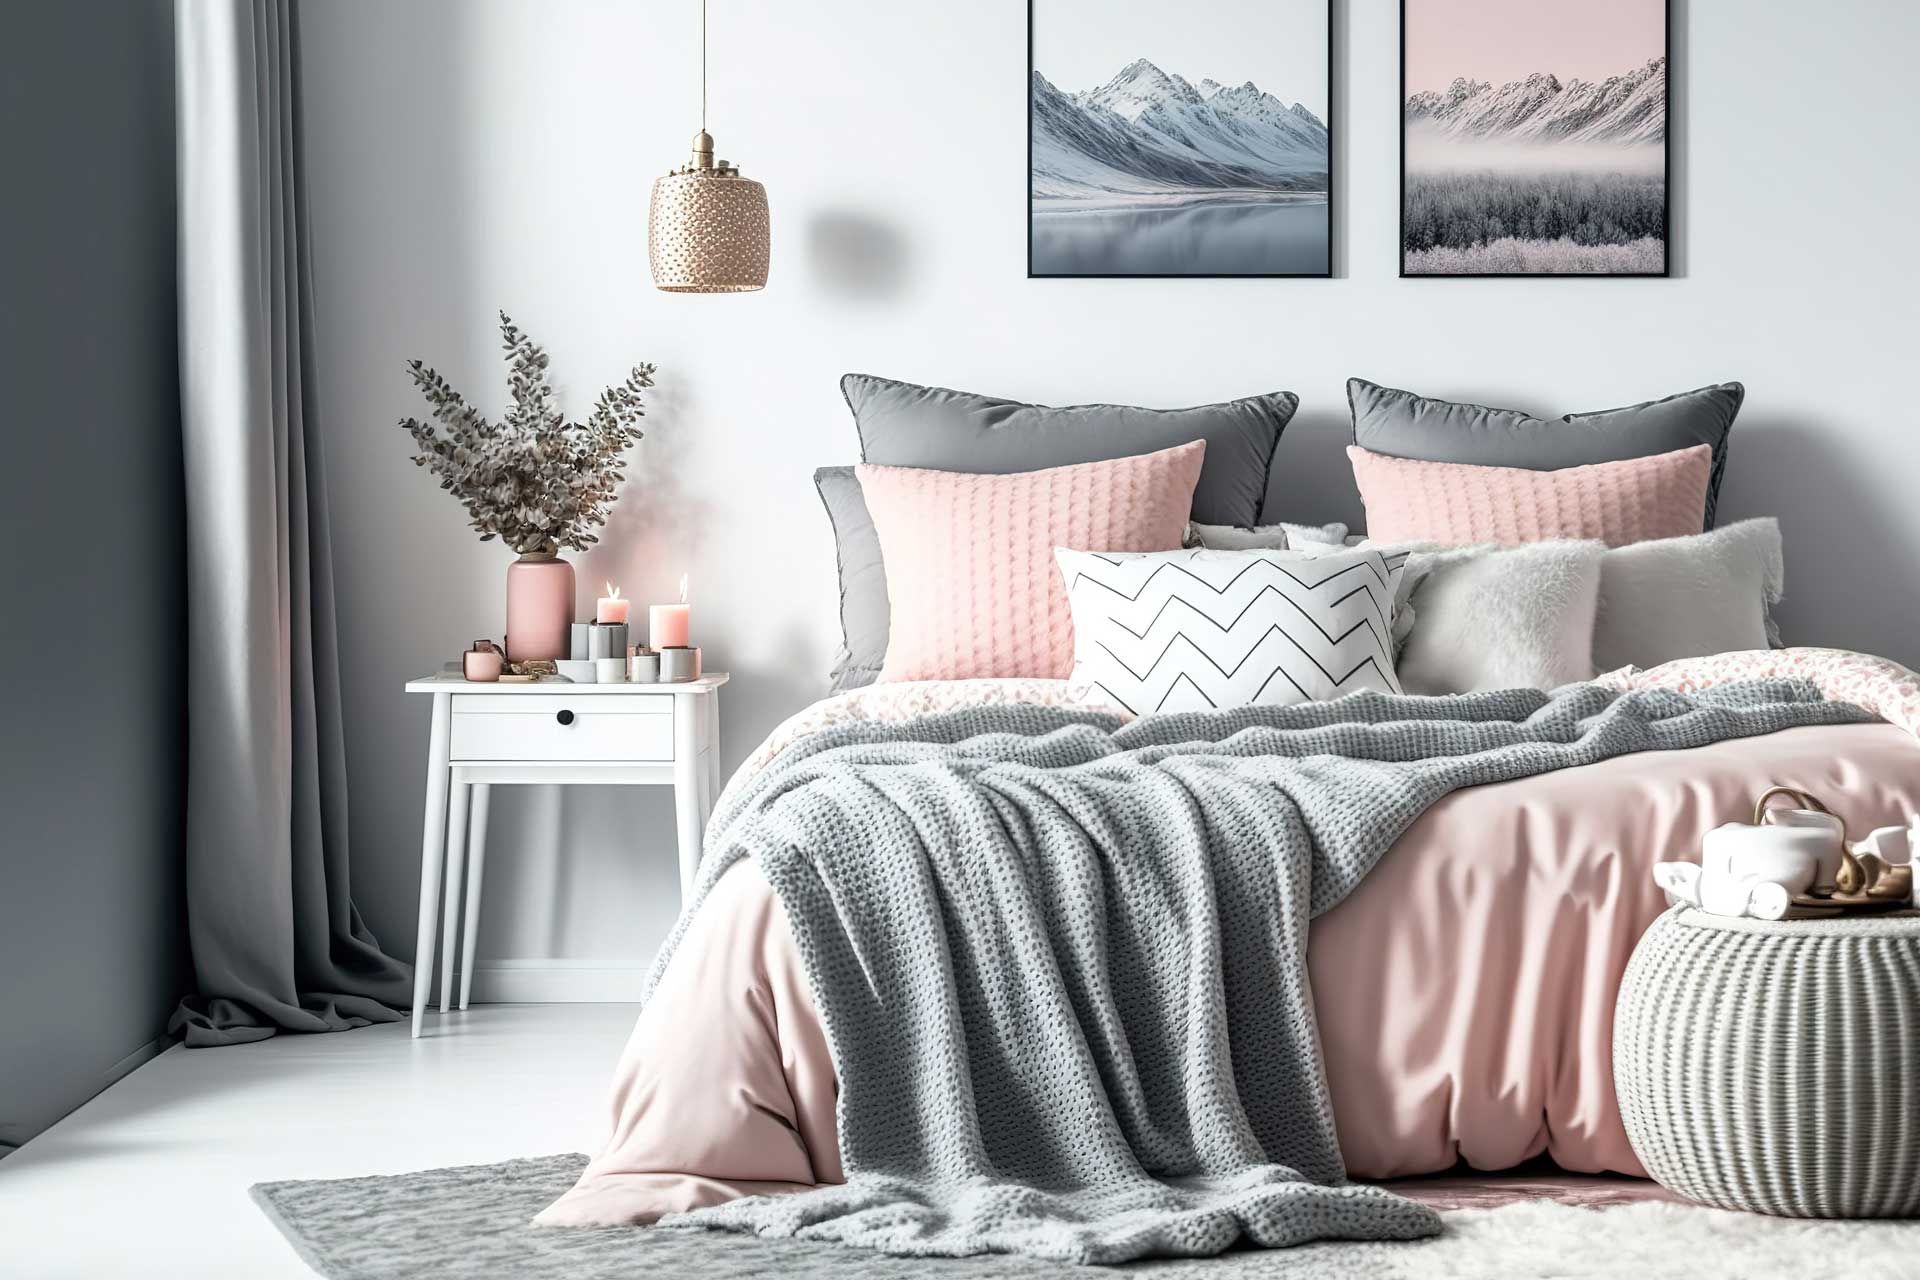 Couvre-lit et ensemble de linge de lit assorti à la décoration de la chambre dans les tons gris et rose